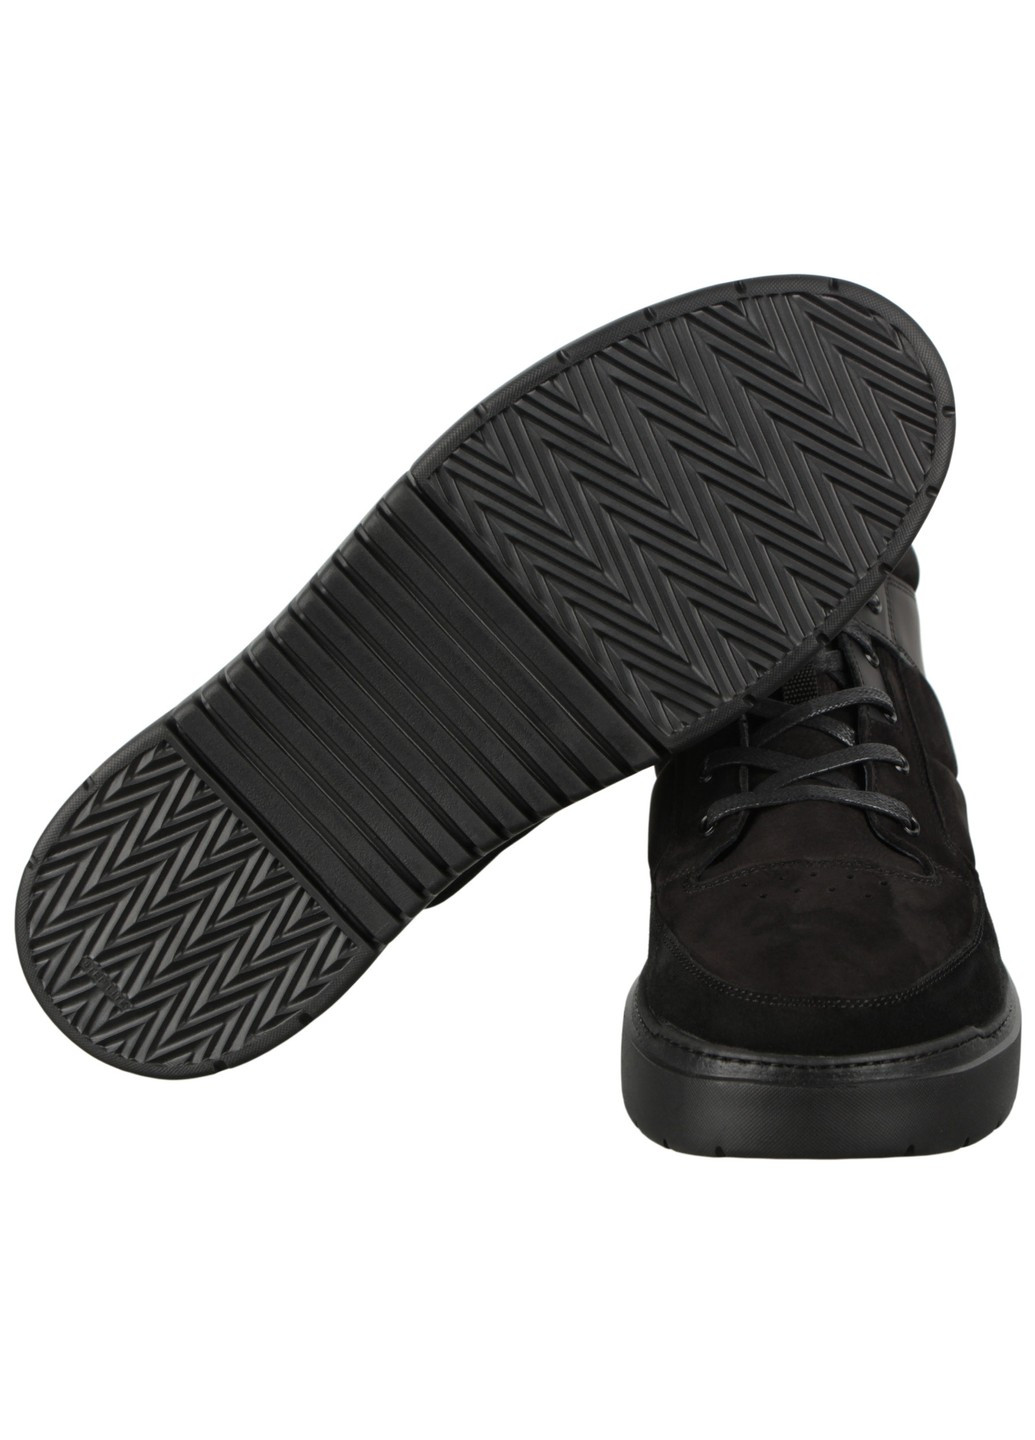 Черные зимние мужские ботинки 198448 Buts